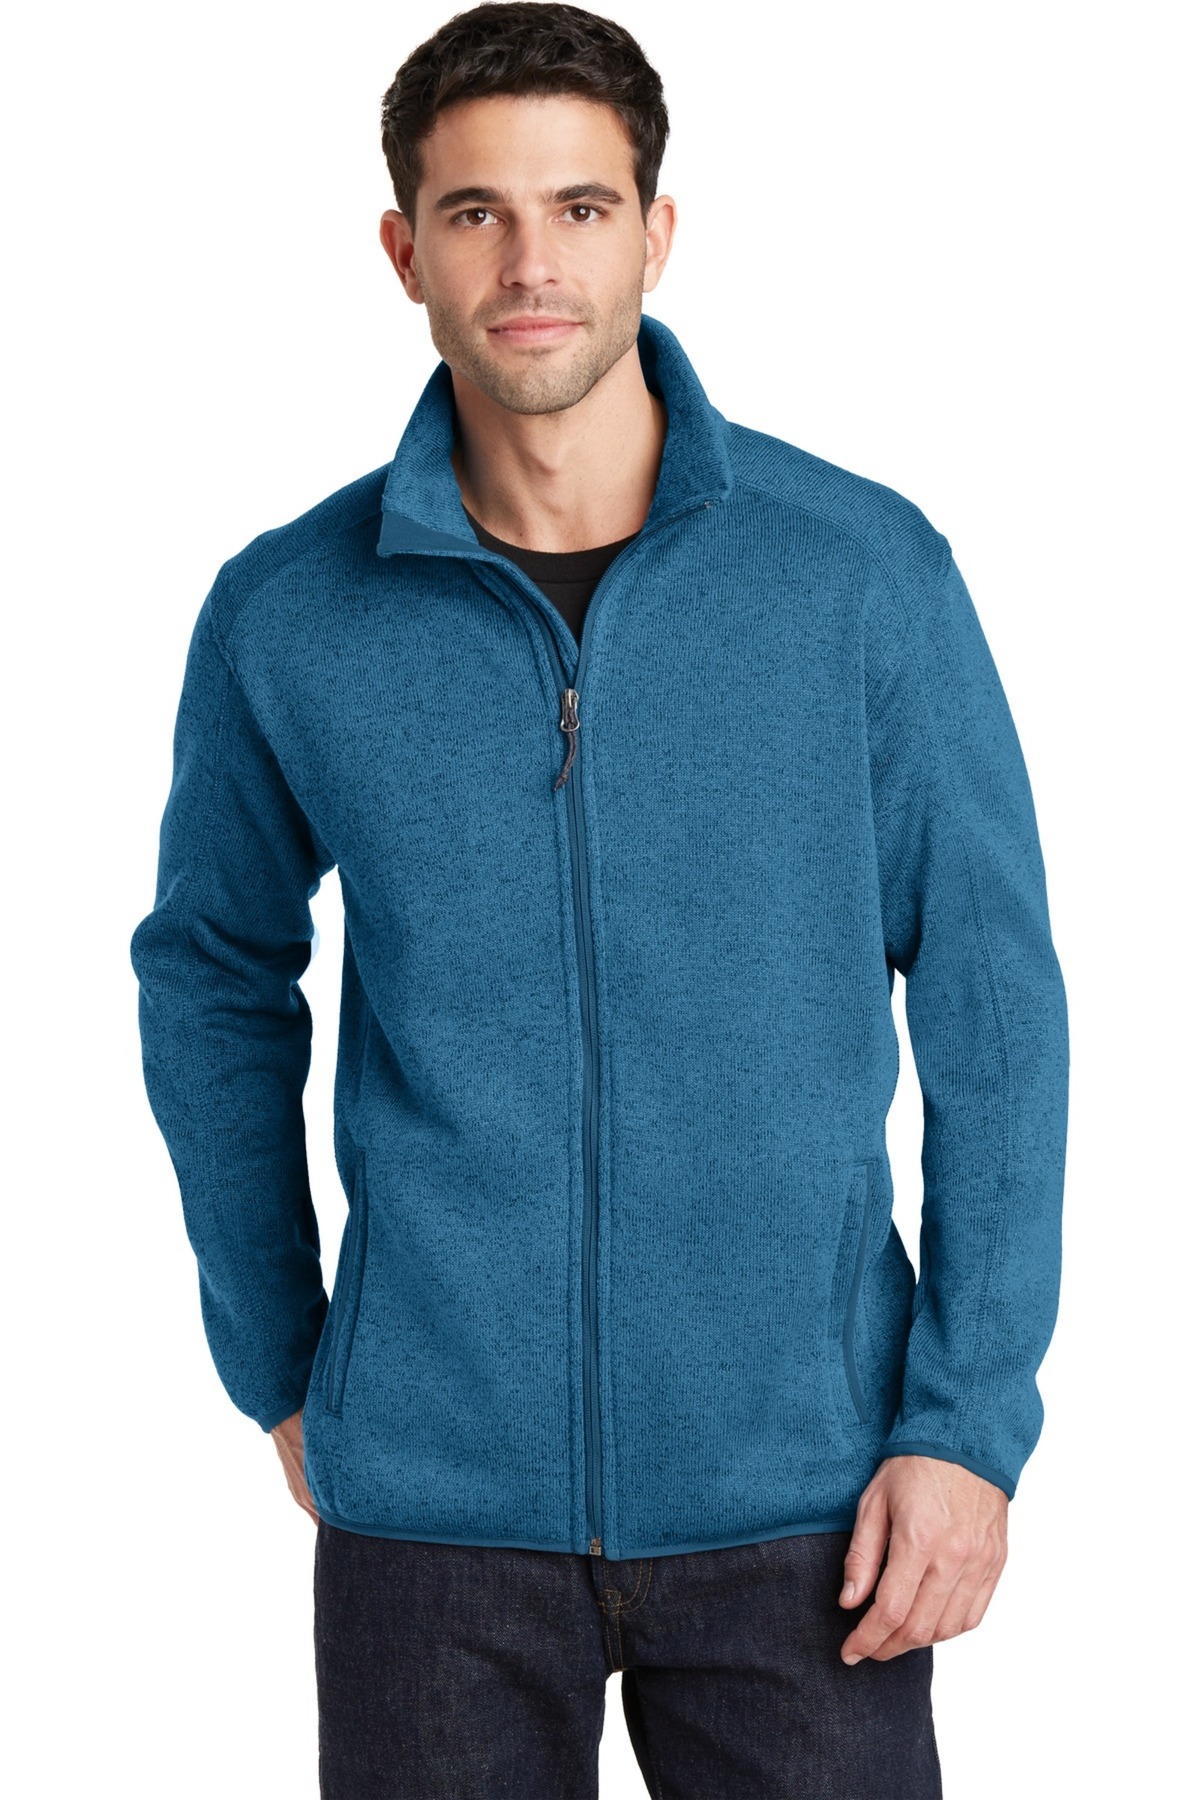 Port Authority Embroidered Men's Sweater Fleece Jacket - Queensboro